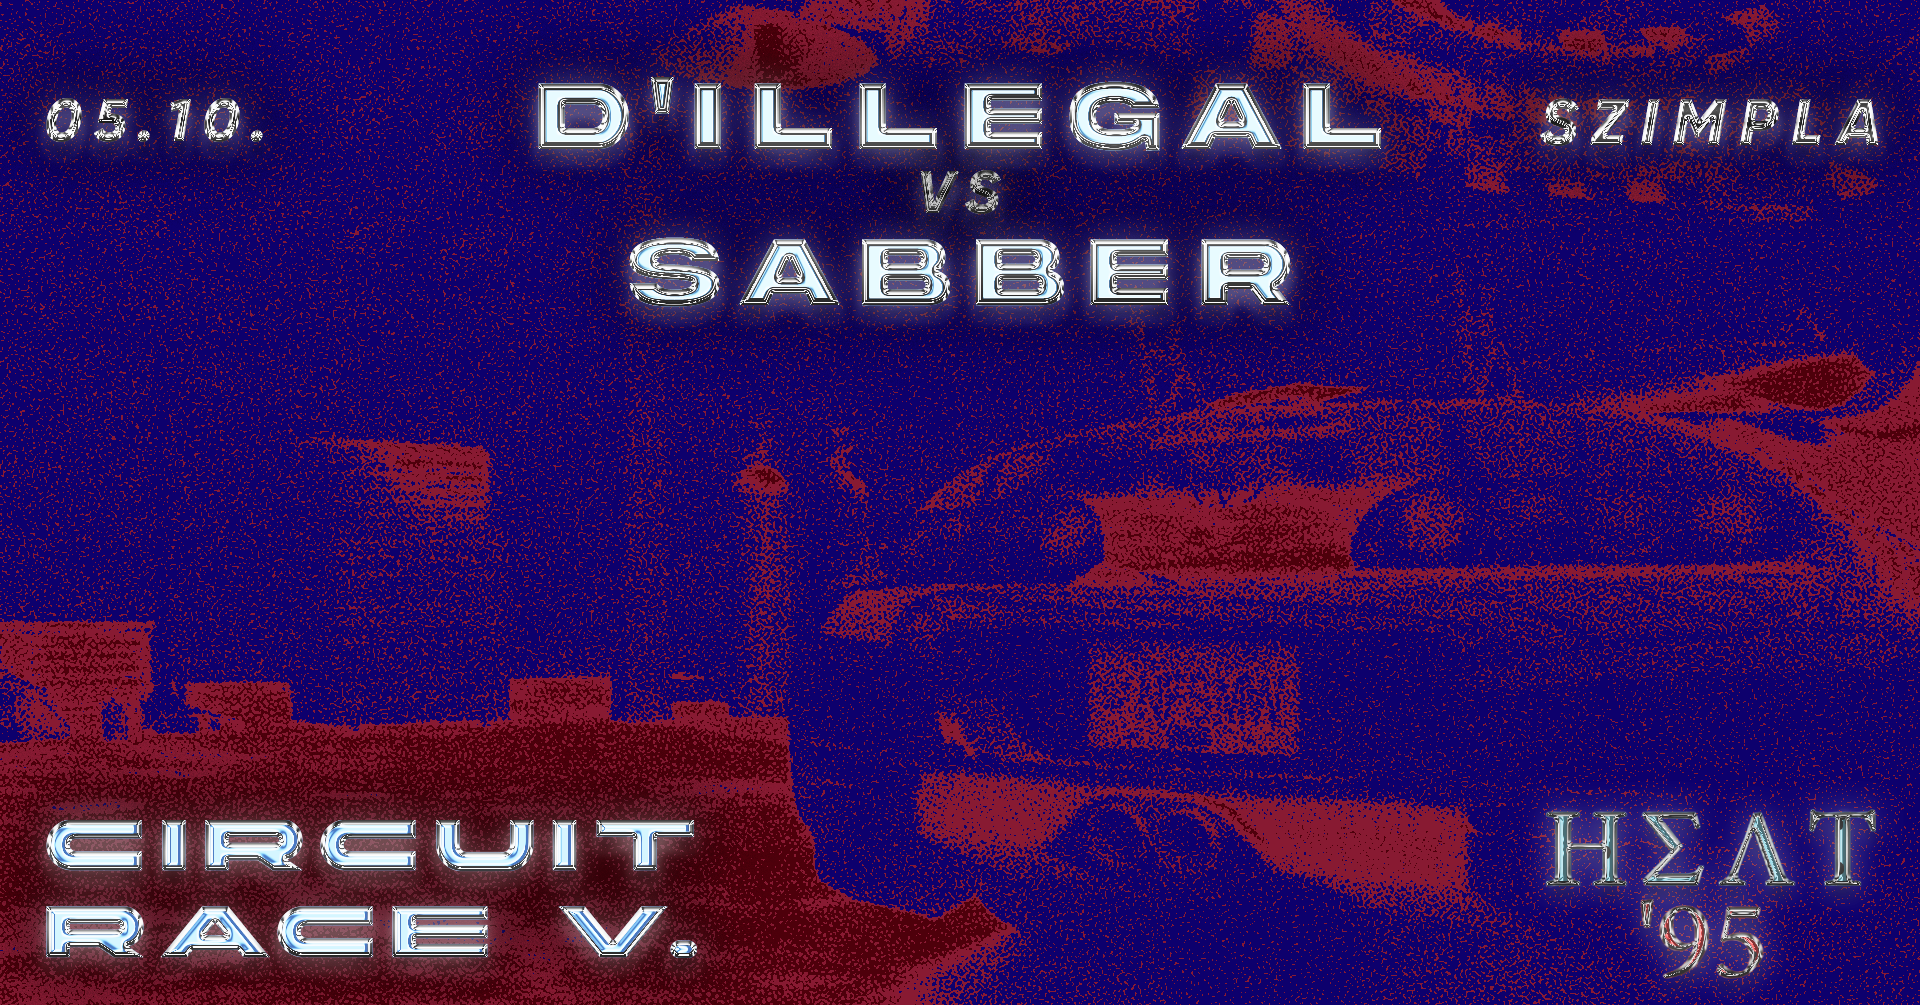 Di'LLEGAL vs. SABBER - CIRCUIT RACE V. - Pres. by HEAT'95 - Página frontal